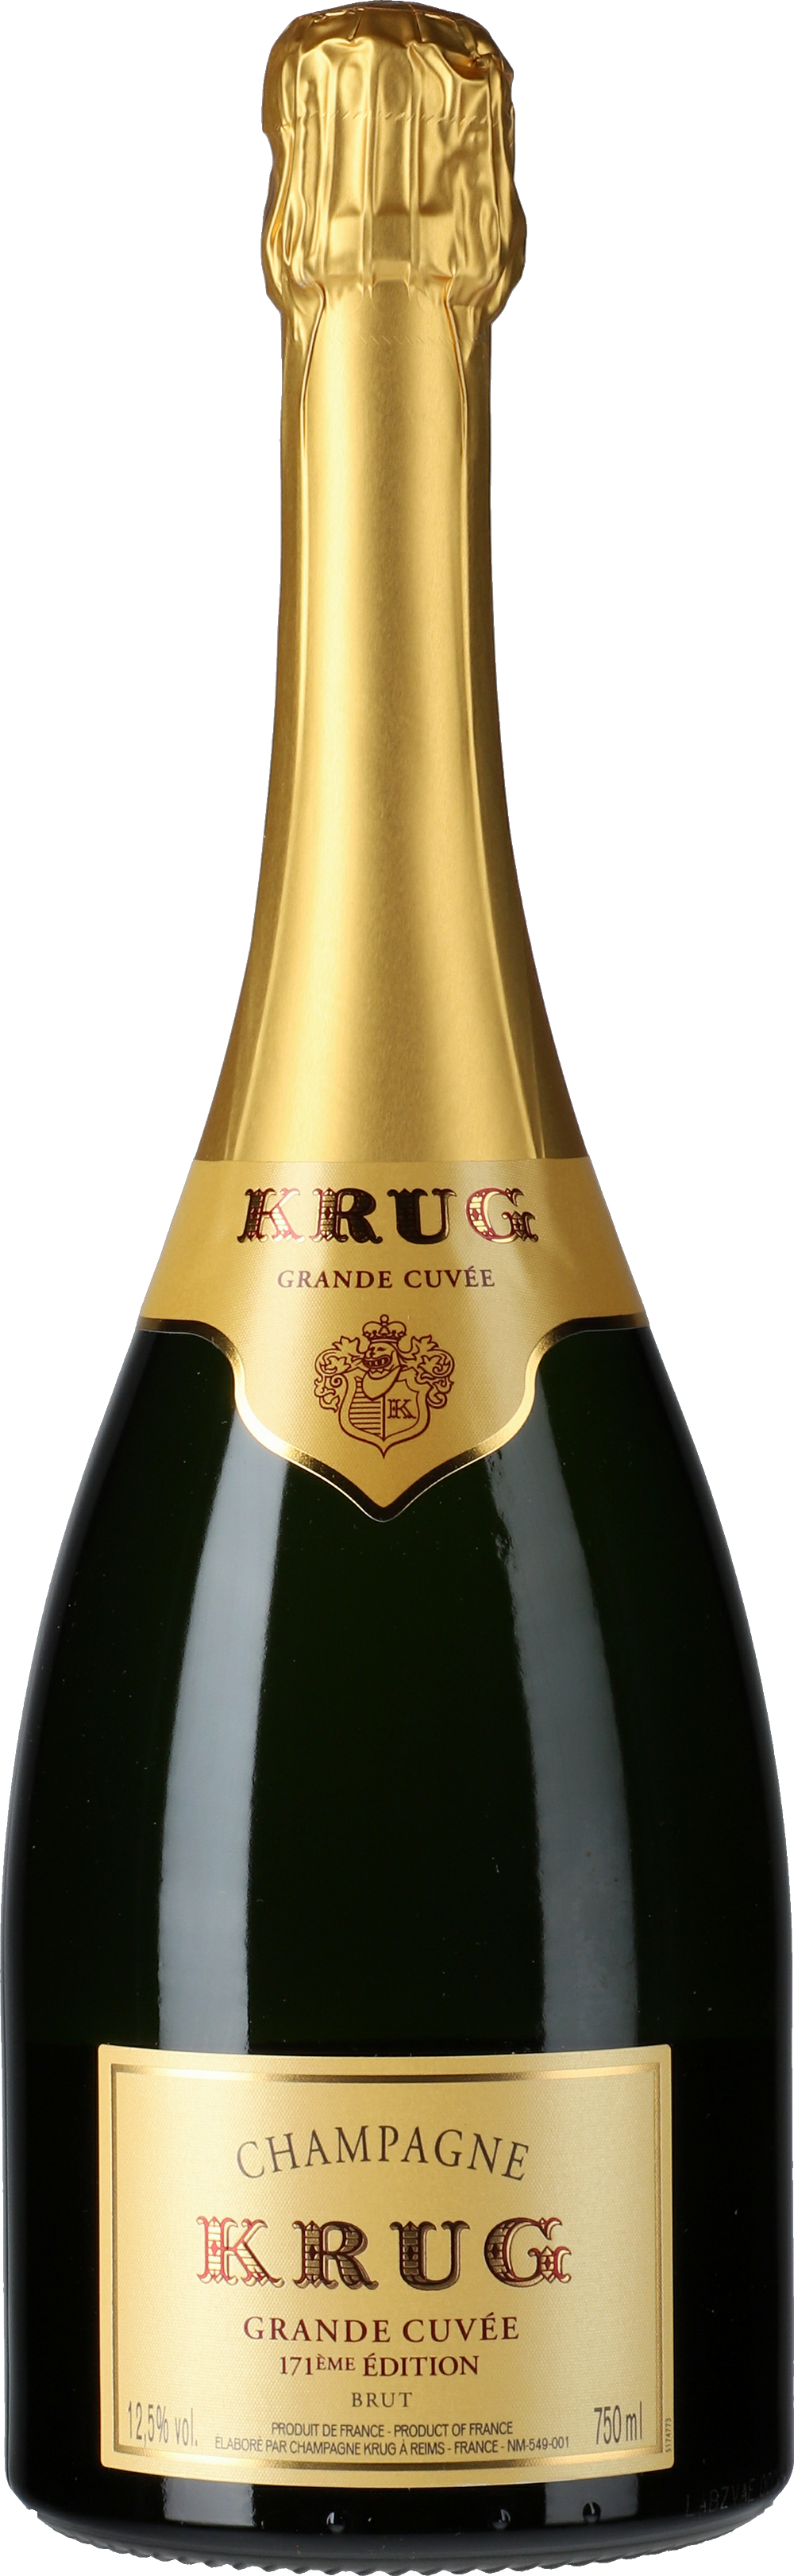 Krug: Champagne Grande Cuvée 171 Gute Lobenbergs - Weine Édition Brut